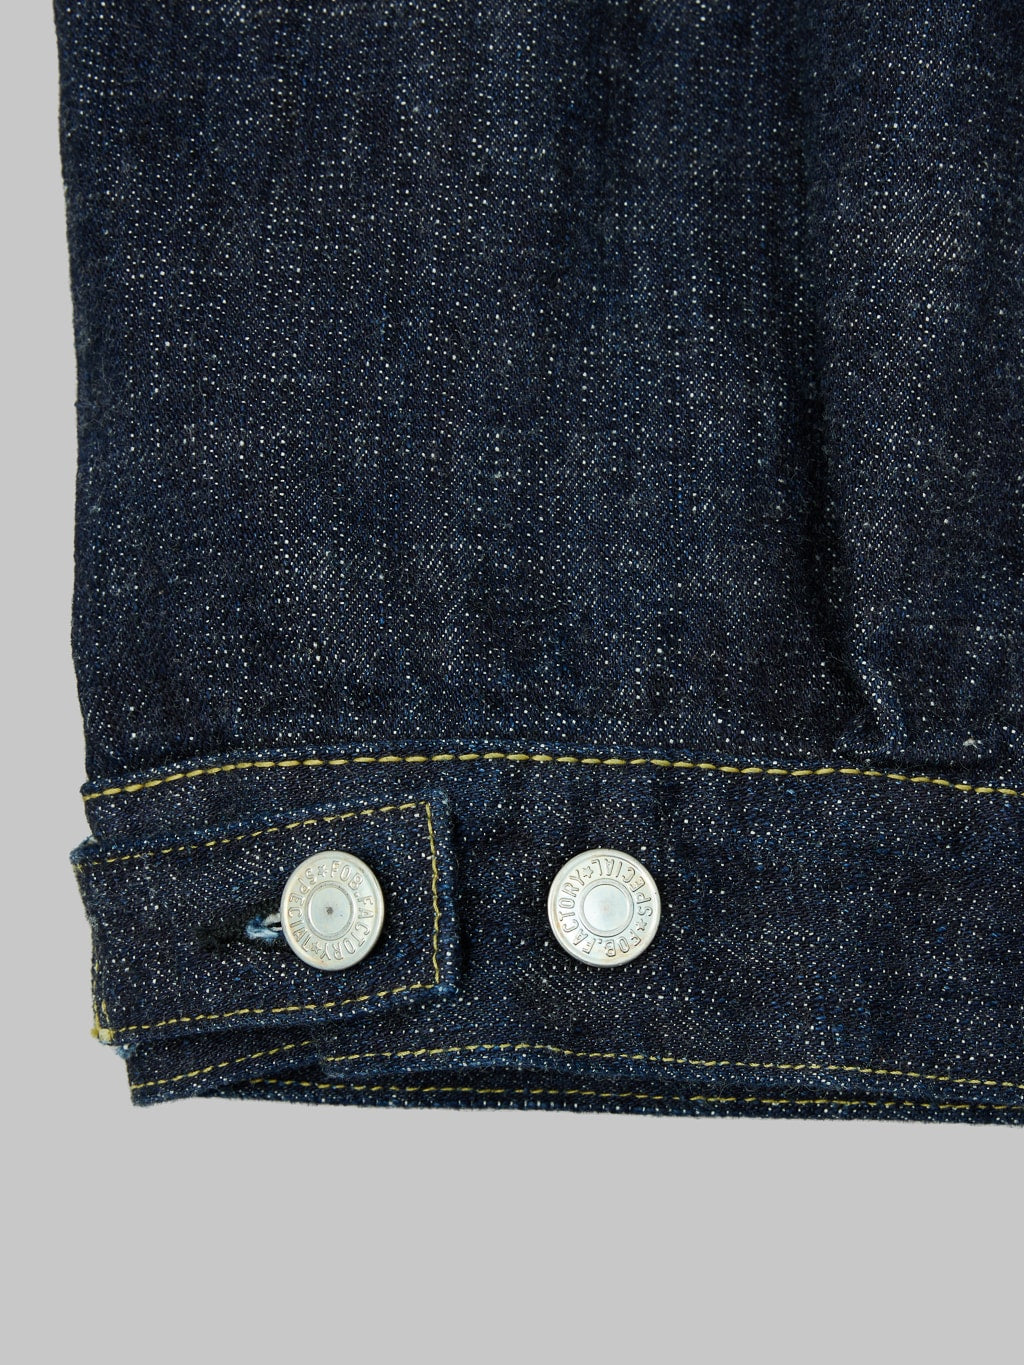 Fob factory Type III denim jacket selvedge waist adjustable tab